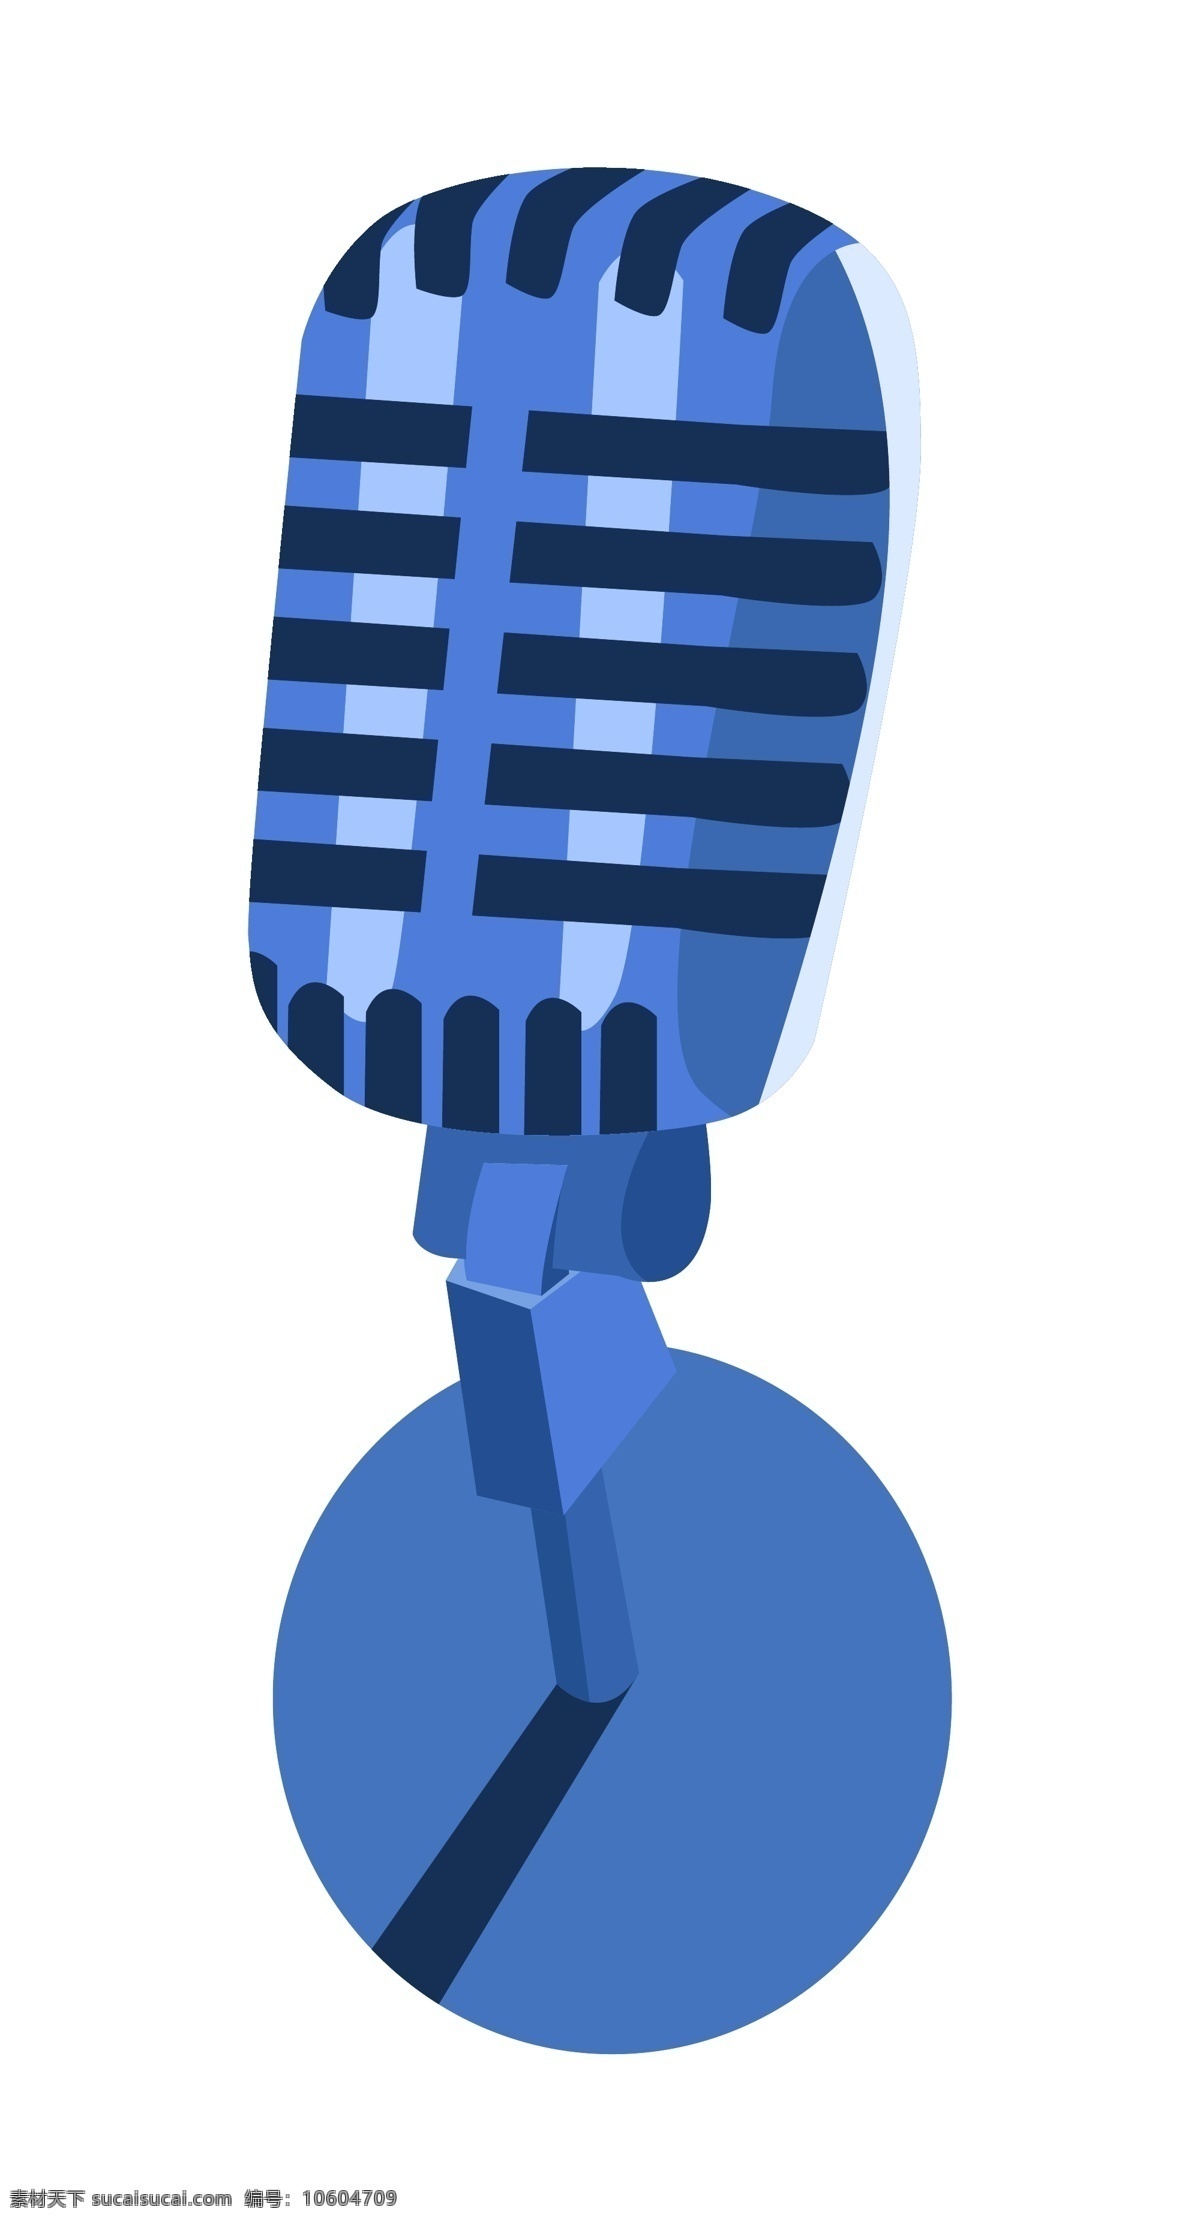 蓝色 话筒 手绘 插画 蓝色的话筒 漂亮的话筒 手绘话筒 卡通话筒 讲话话筒 讲课话筒 唱歌话筒 精美话筒